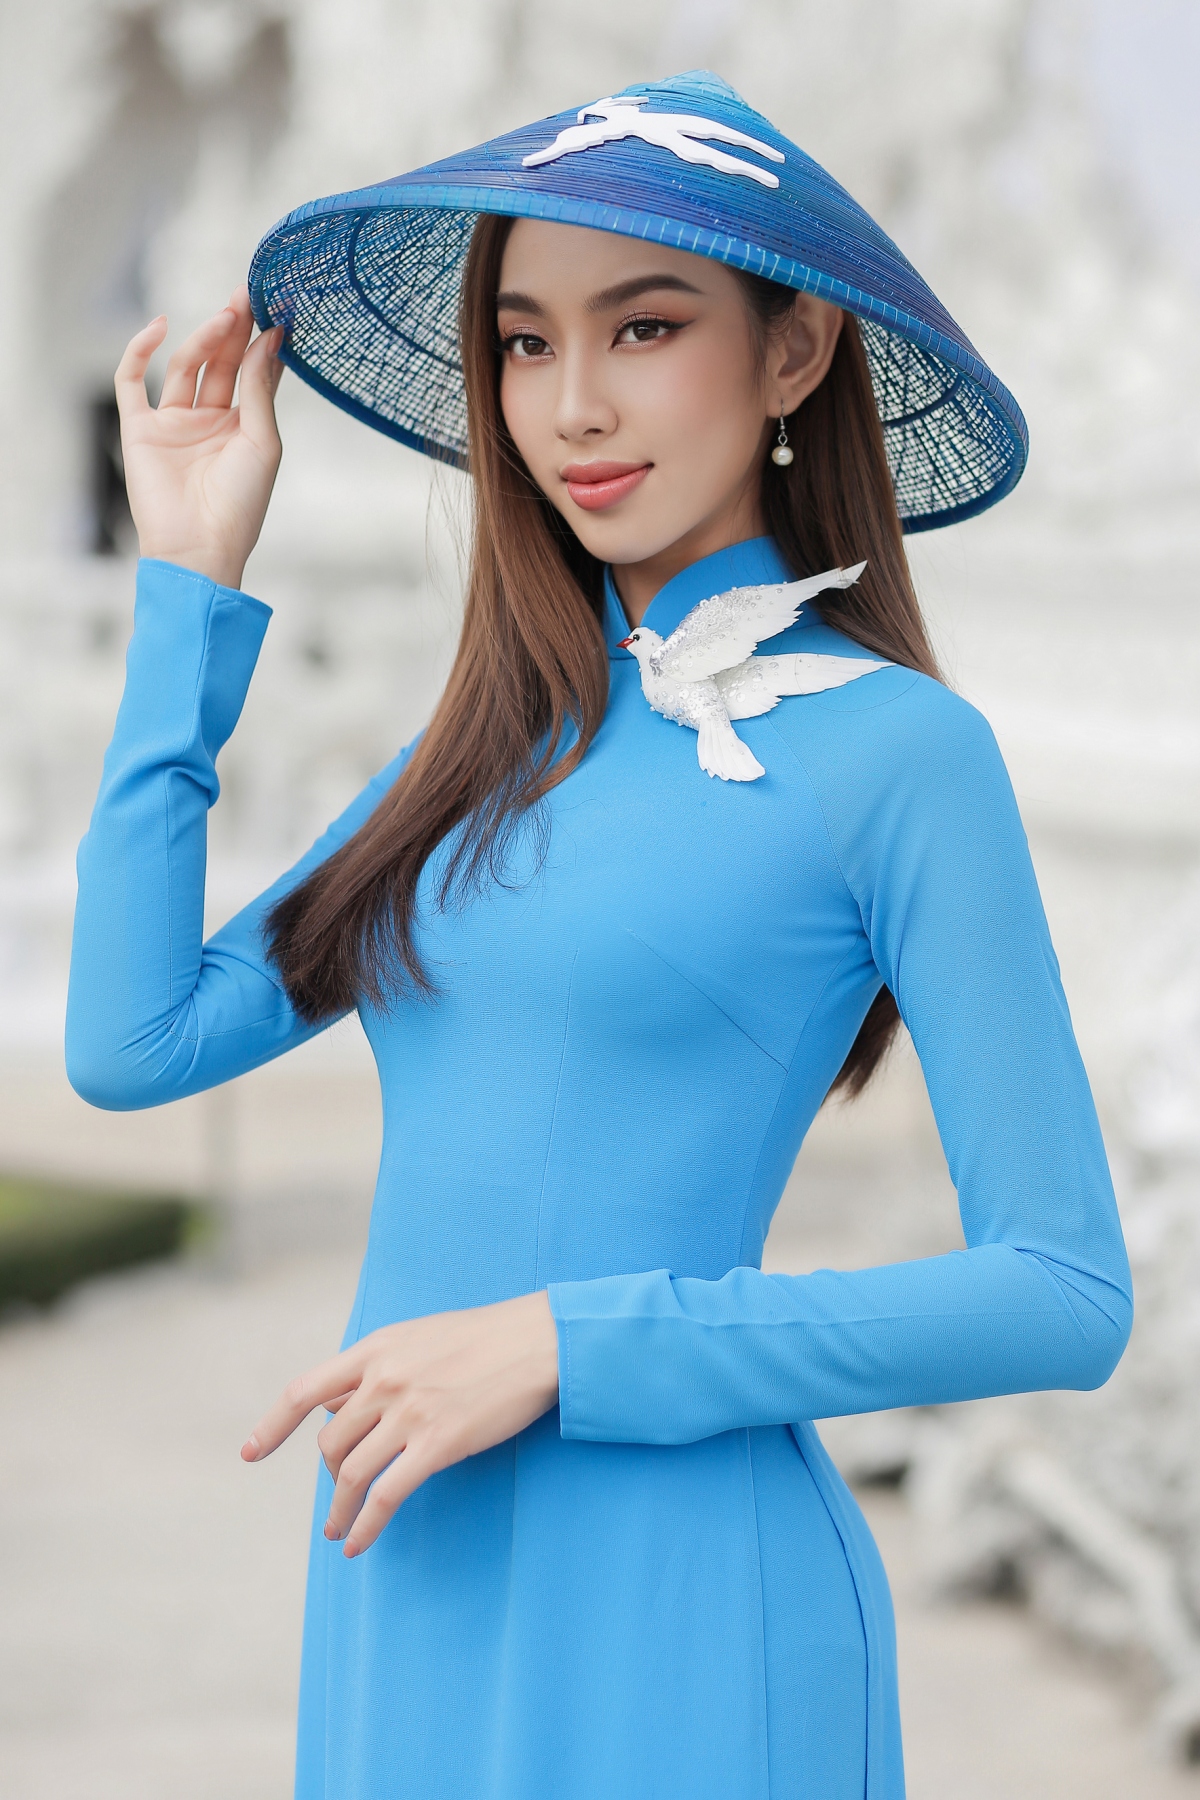 23 mẫu váy pastel ngọt ngào và nữ tính của mỹ nhân Việt